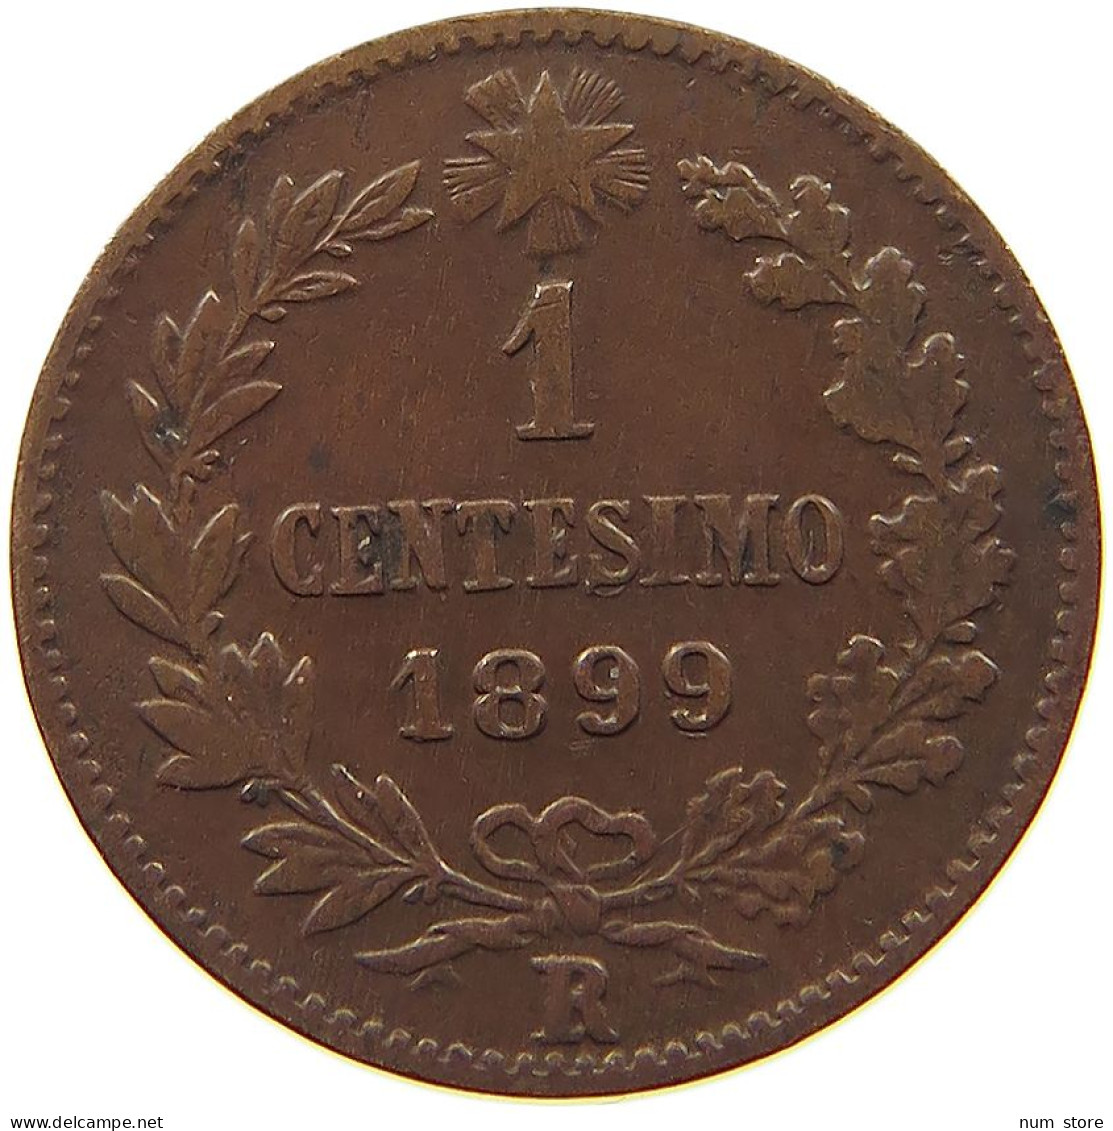 ITALY CENTESIMO 1899 R UMBERTO I. 1878-1900 #a015 0133 - 1878-1900 : Umberto I